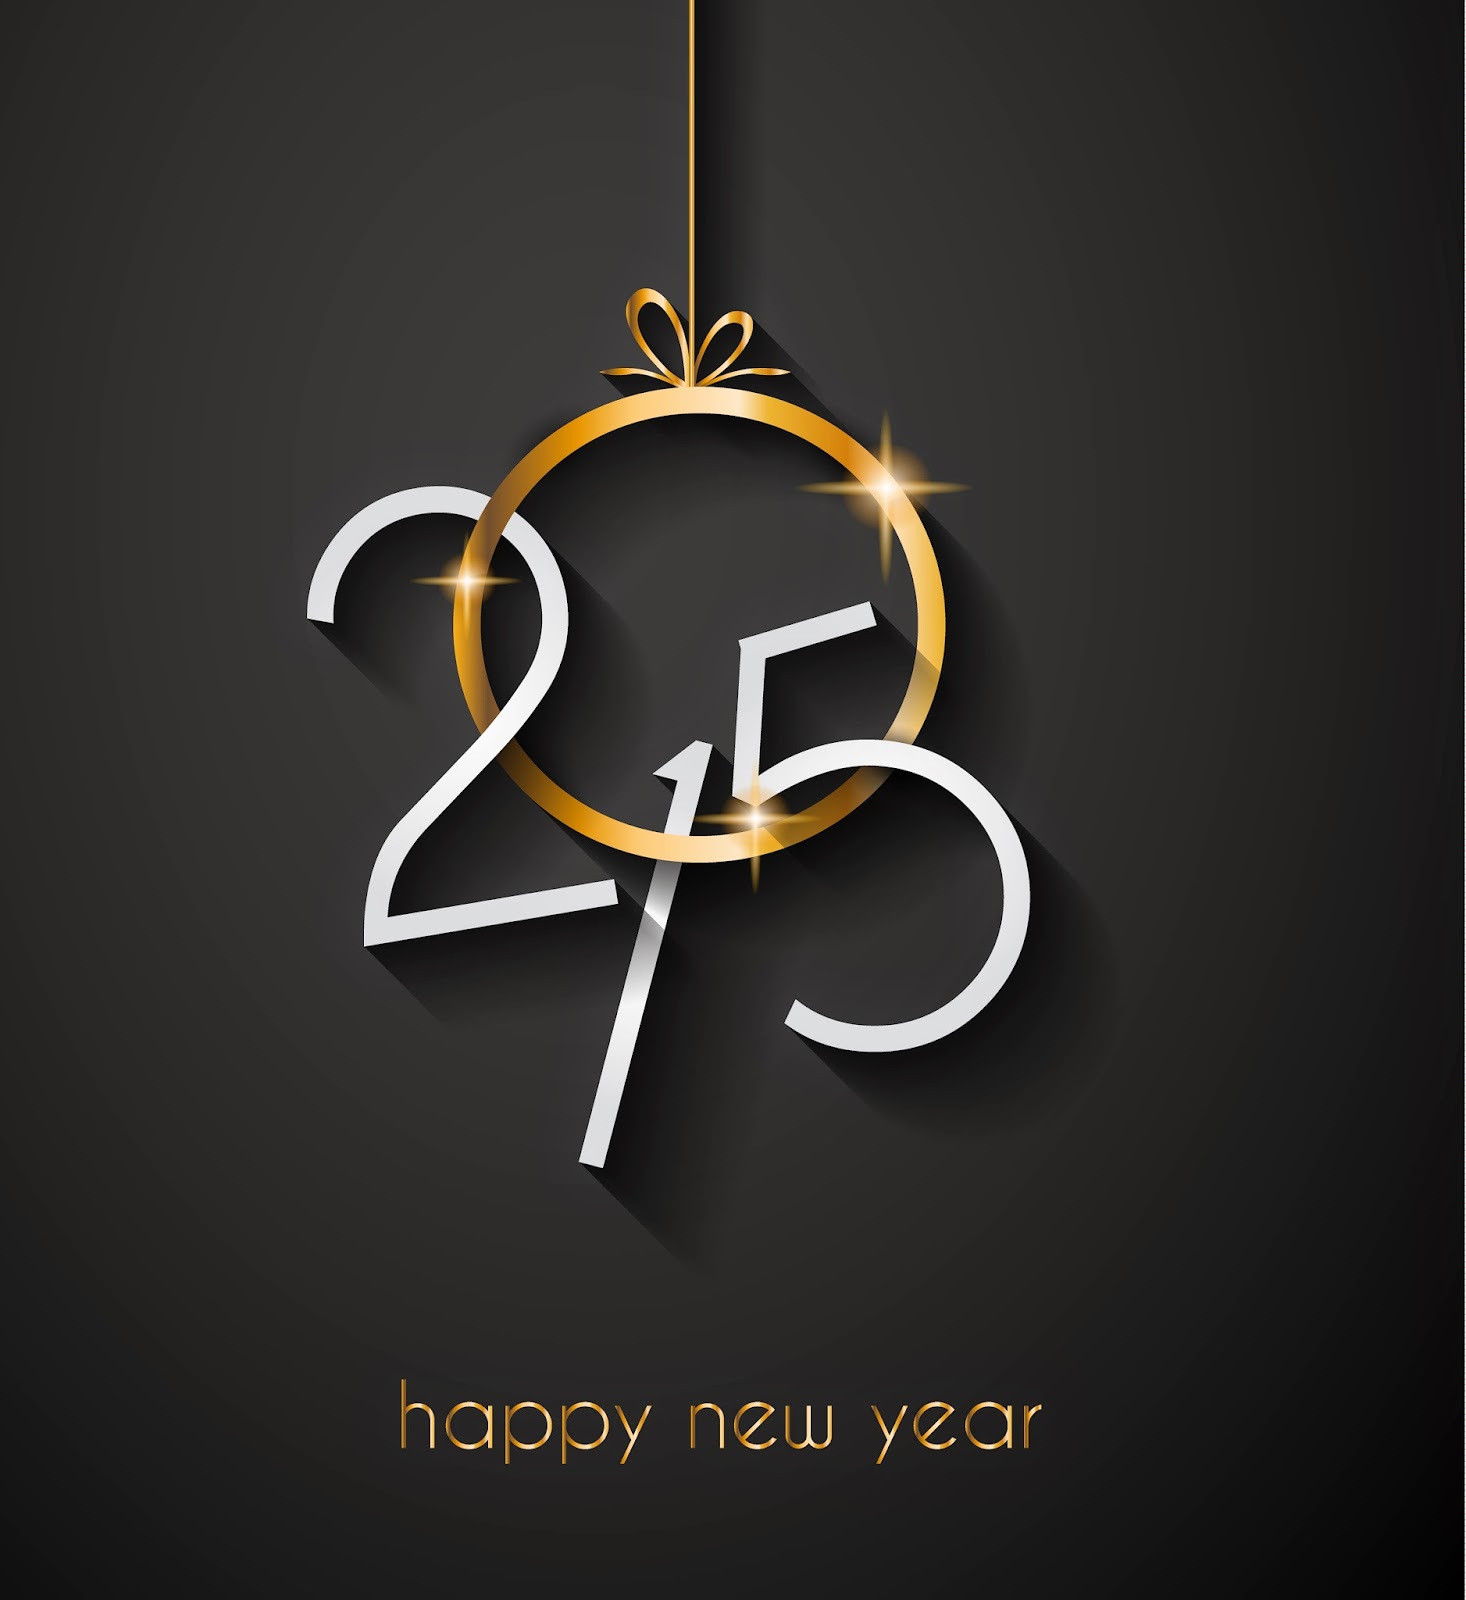 Mistik Ajaib Blogspot Com Happy New Year 2019 All